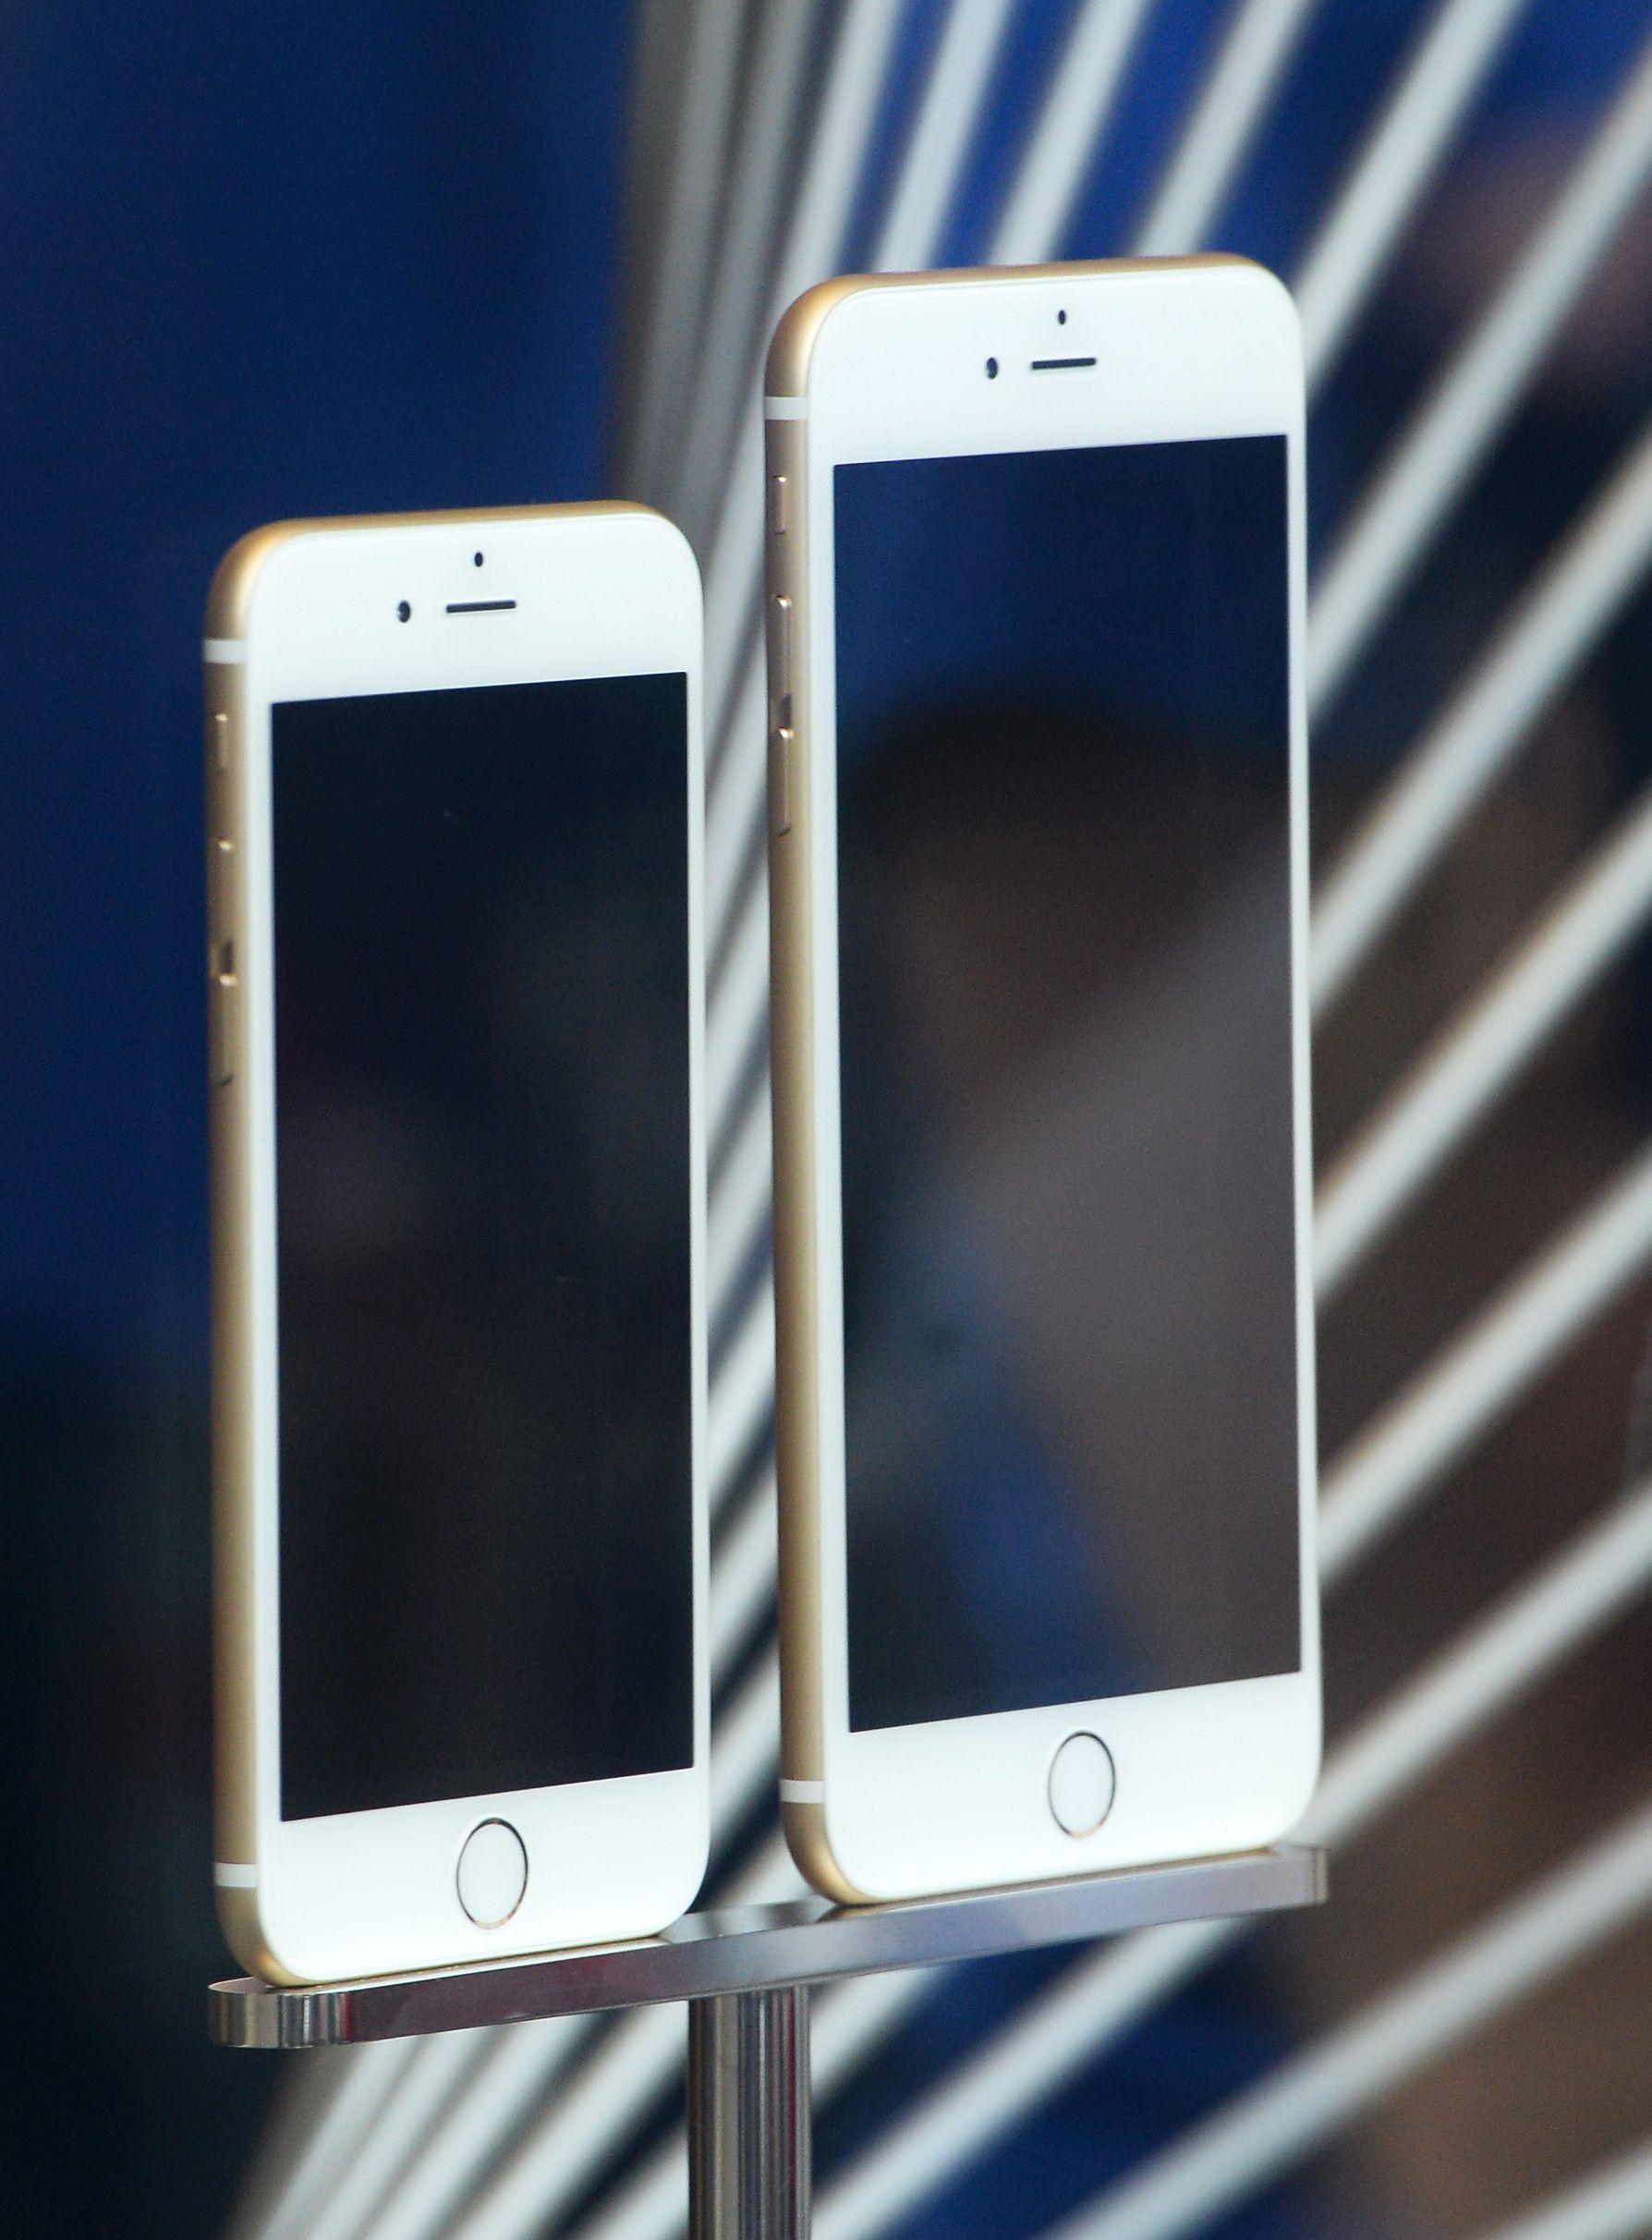 НЕ выплескивай на совершенно новый   iPhone XS   только пока - потому что Apple только что сделала ваш старый iPhone намного быстрее